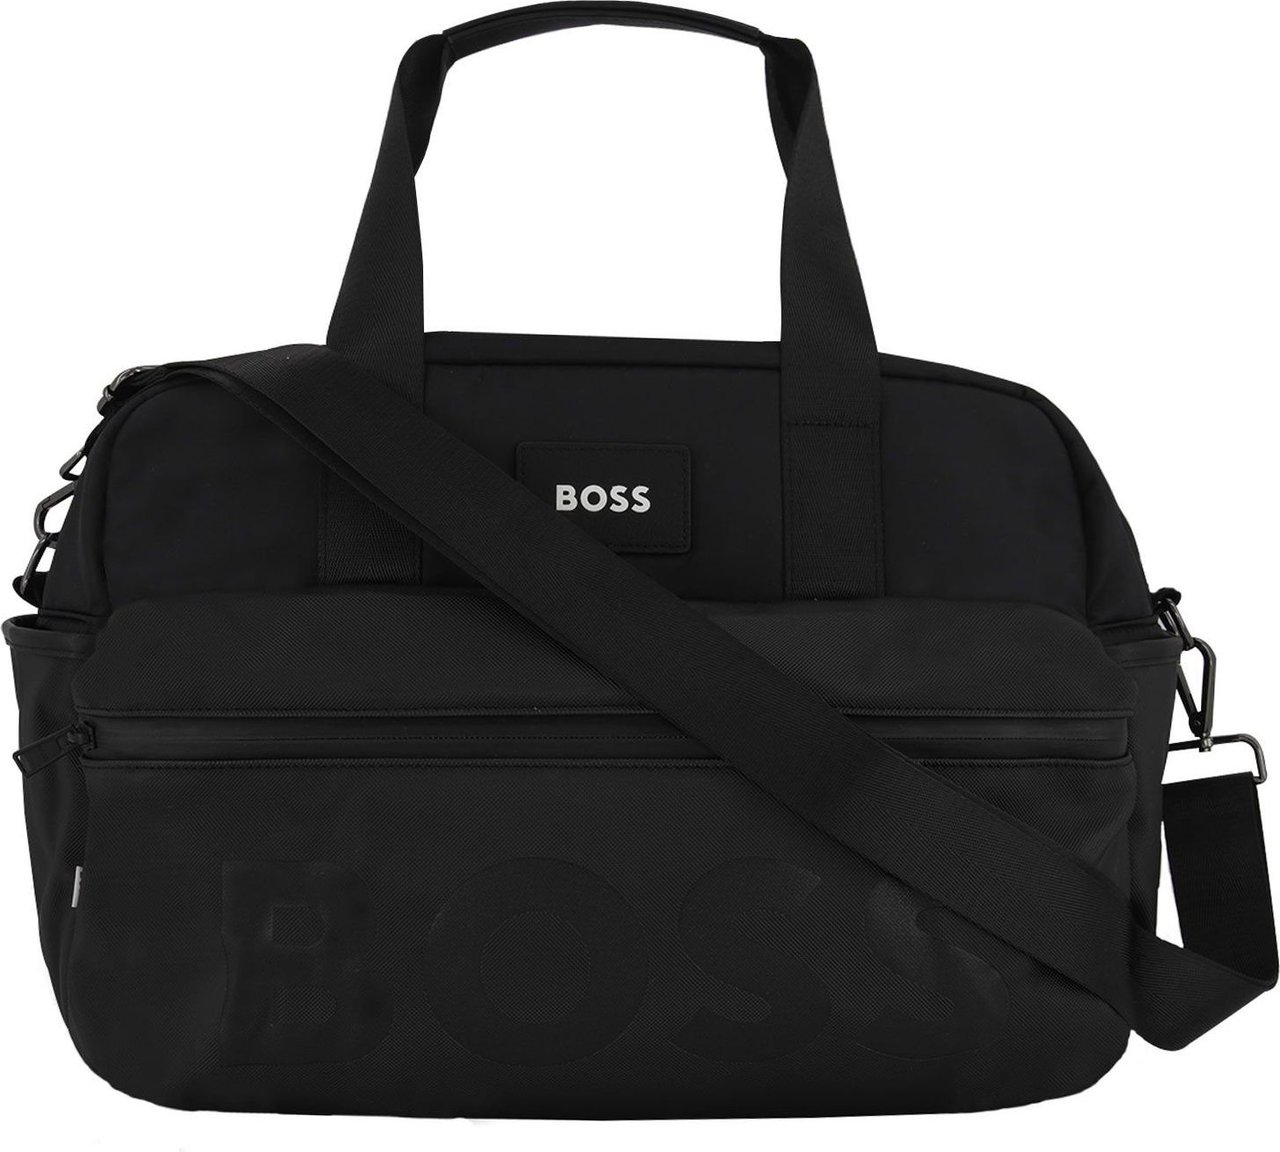 Hugo Boss Boss J90274 luiertas zwart Zwart